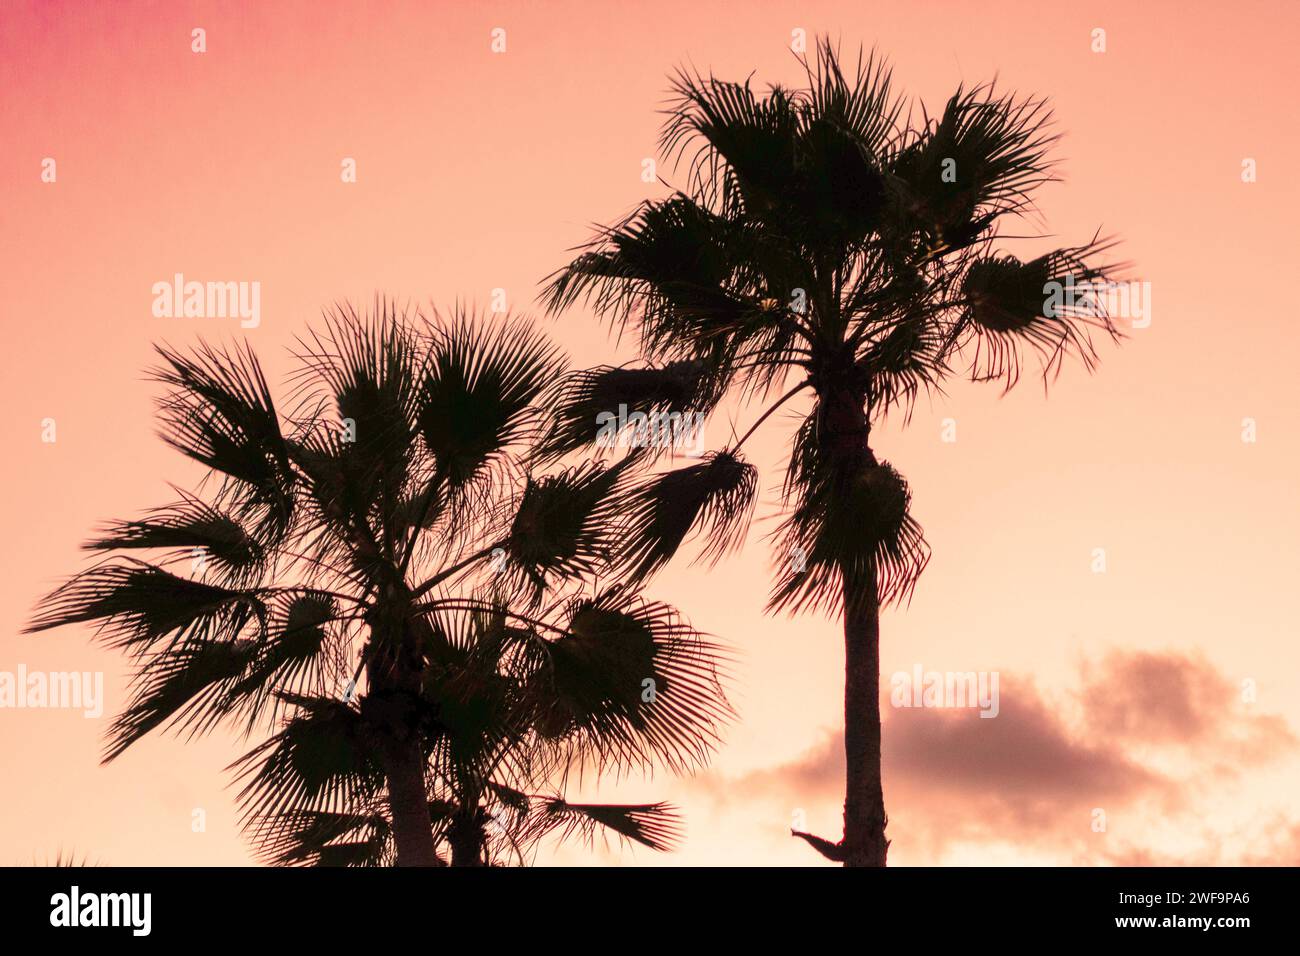 Alberi di palme in una silhouette sulla spiaggia in una posizione tropicale contro un brillante cielo arancione al tramonto. Foto Stock